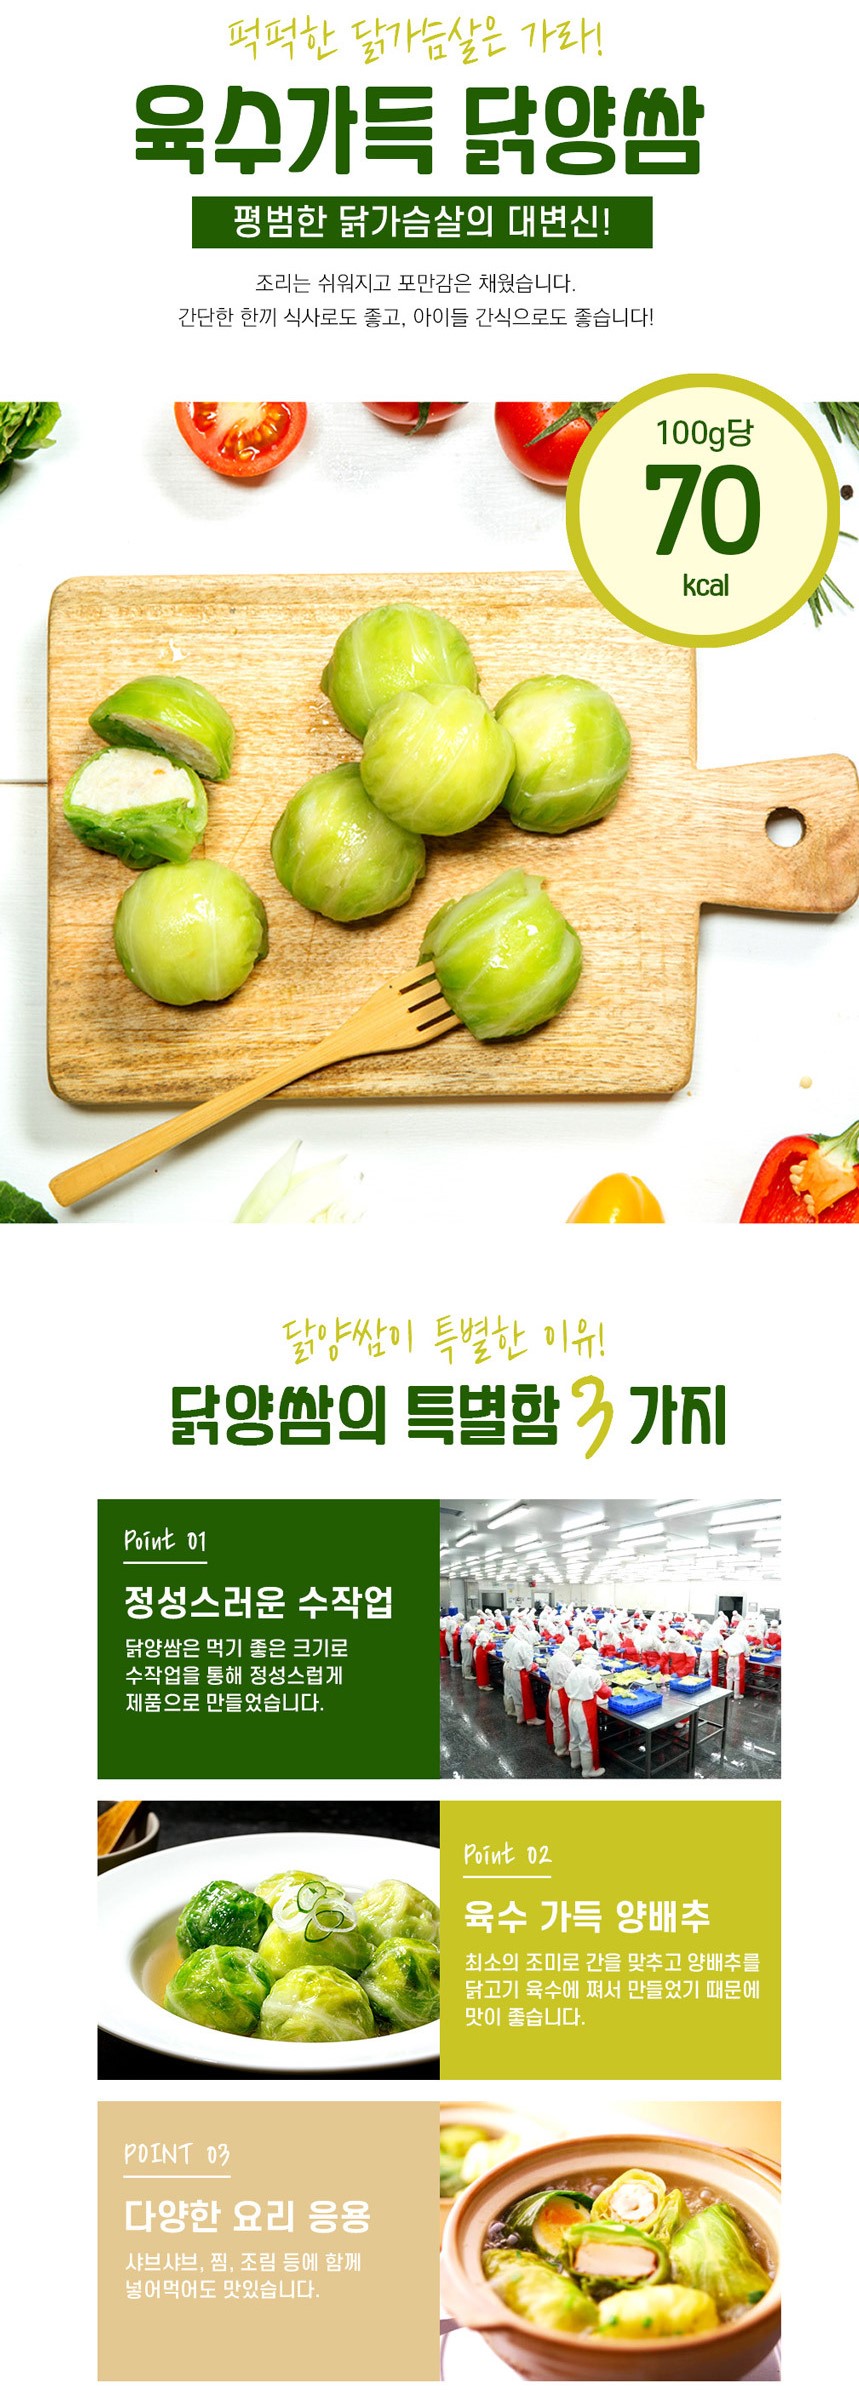 韓國食品-[펀쿡] 닭가슴살 양배추쌈 280g